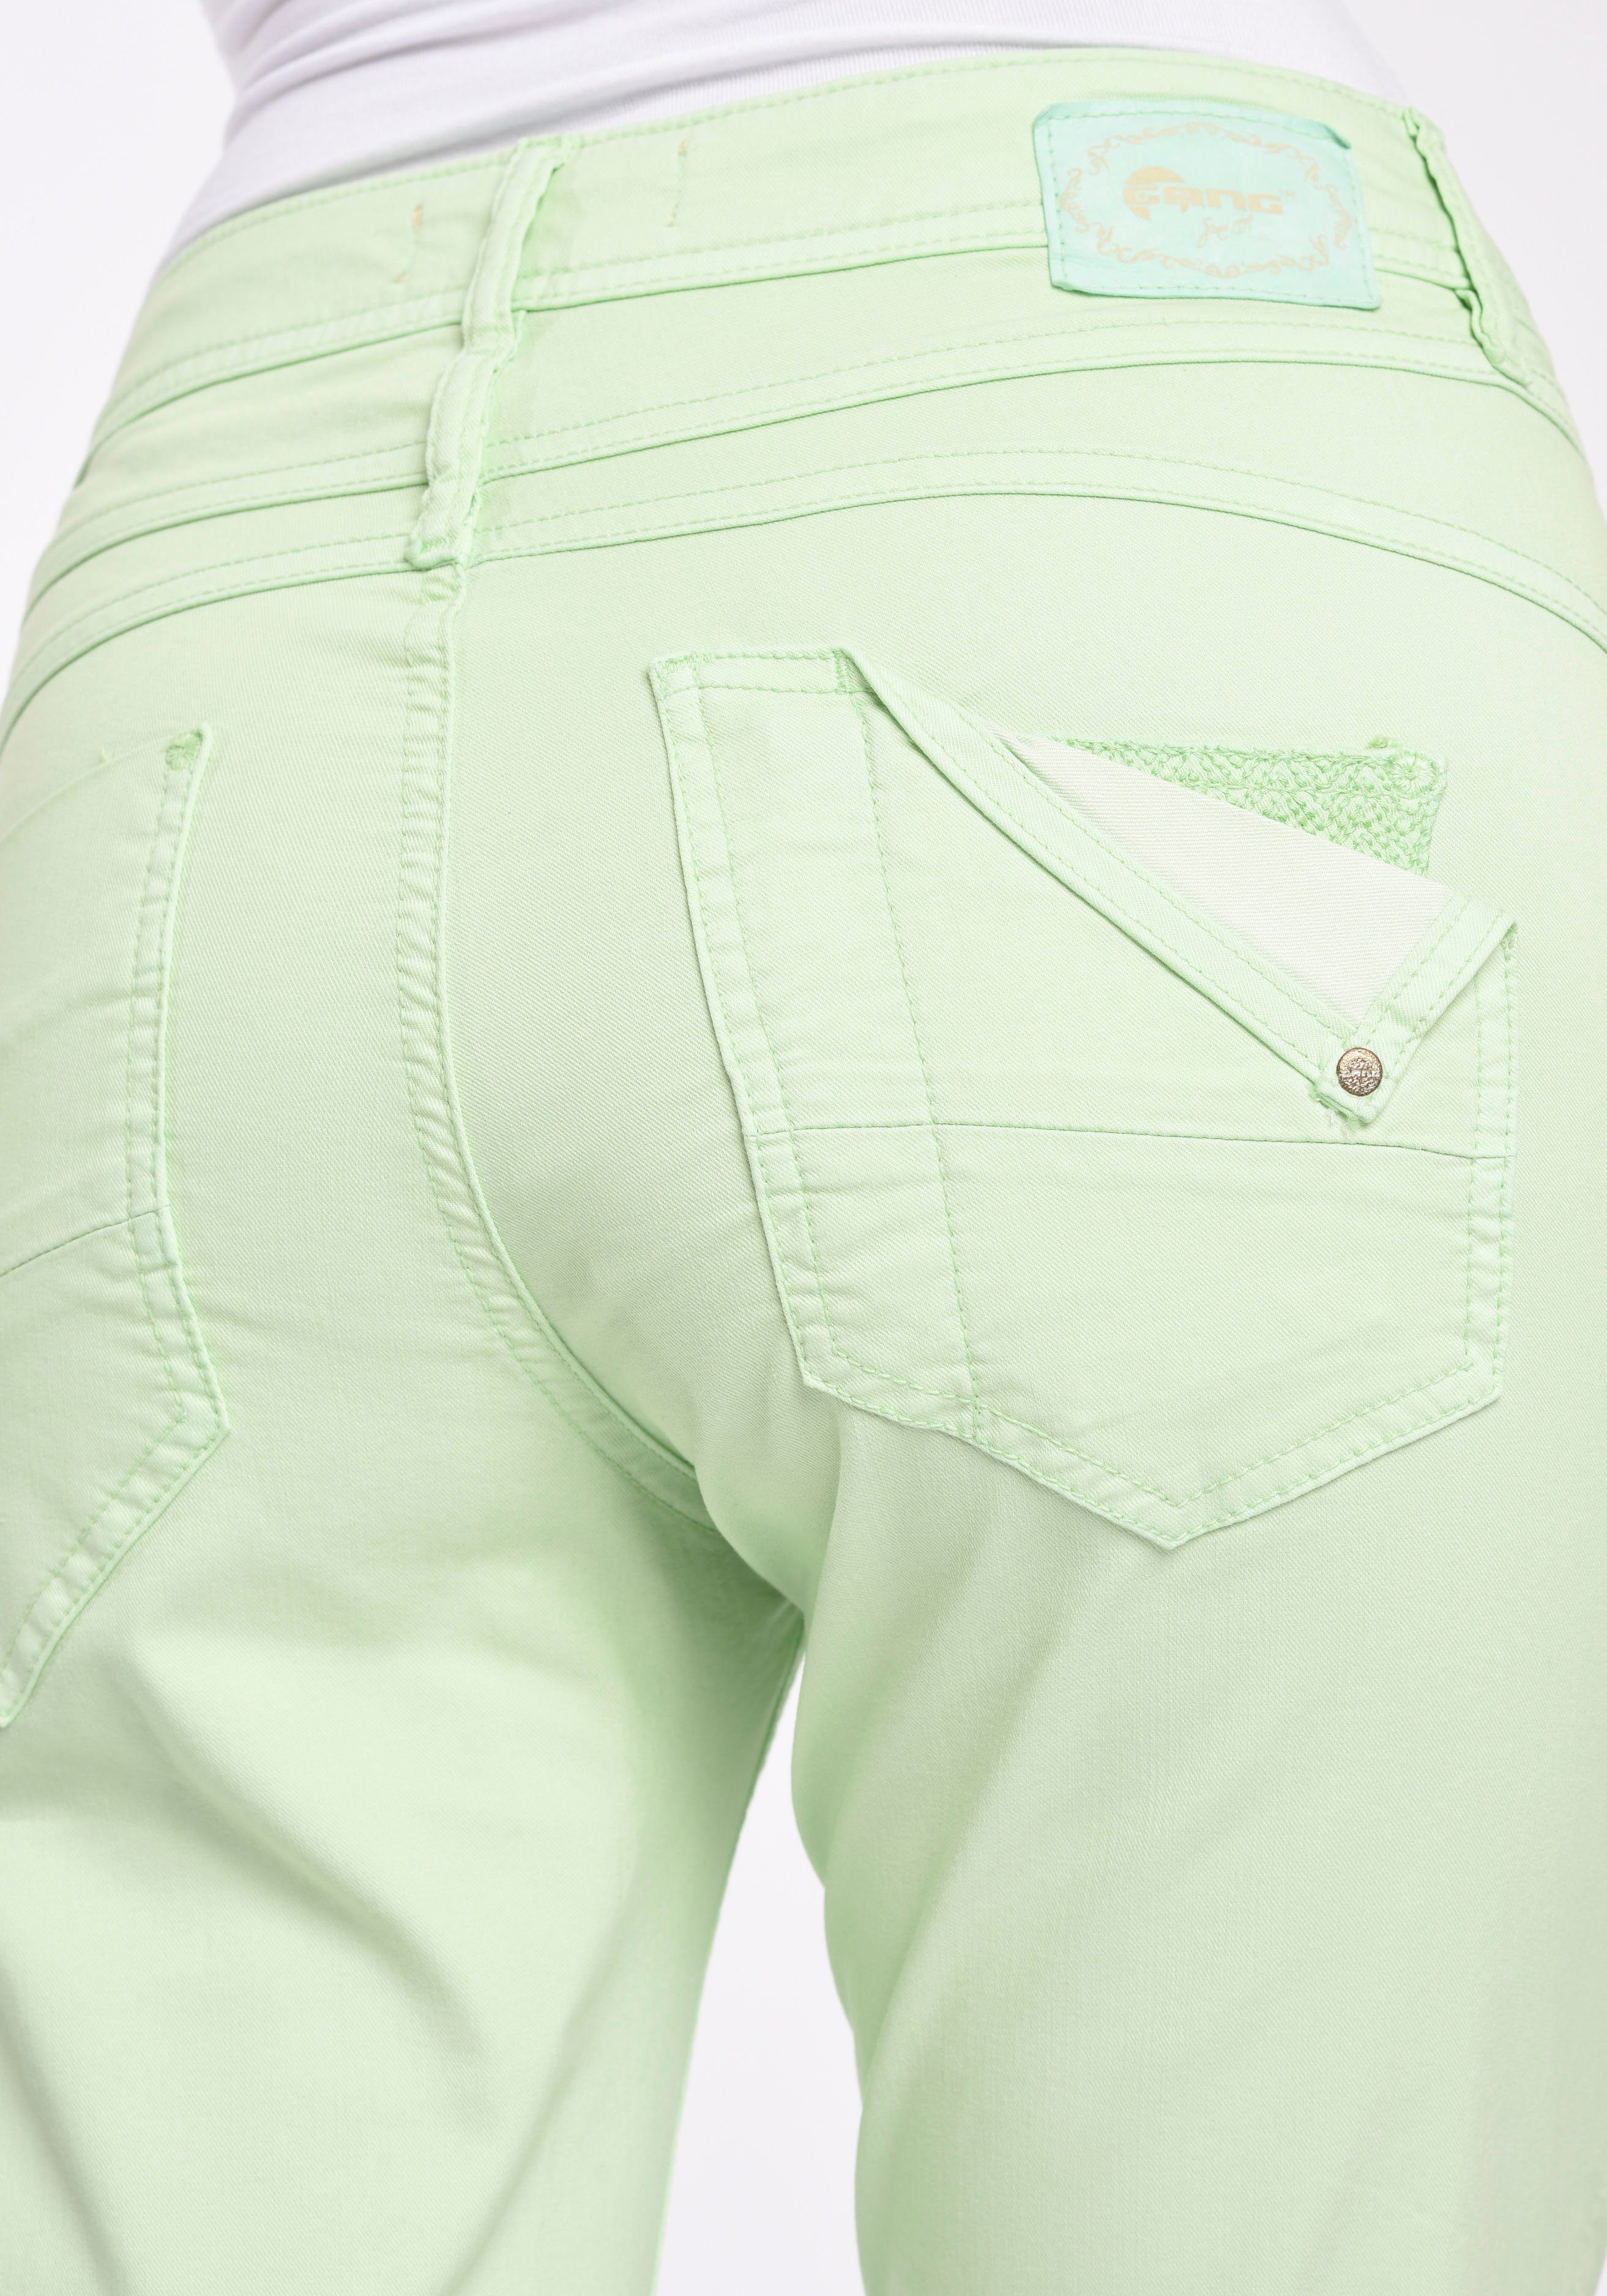 GANG 5-Pocket-Hose bijou pastel 5-Pocket Beinlänge verkürzter modisch 94AMELIE Style green CROPPED mit